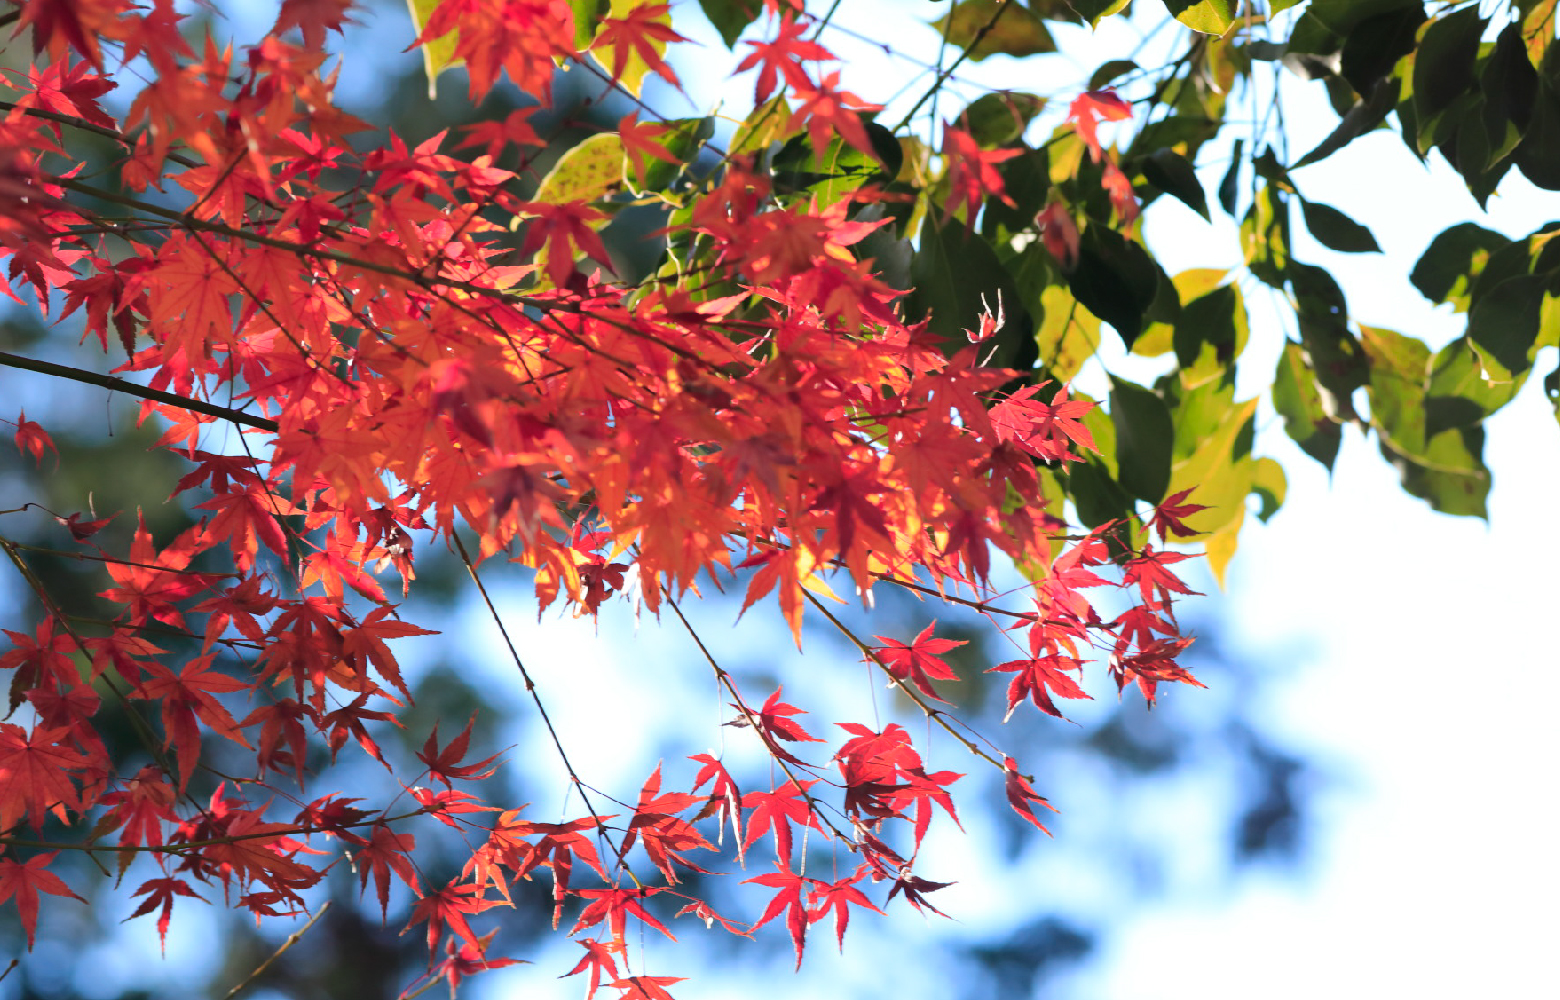 赤く色づいた紅葉の枝が伸びている写真